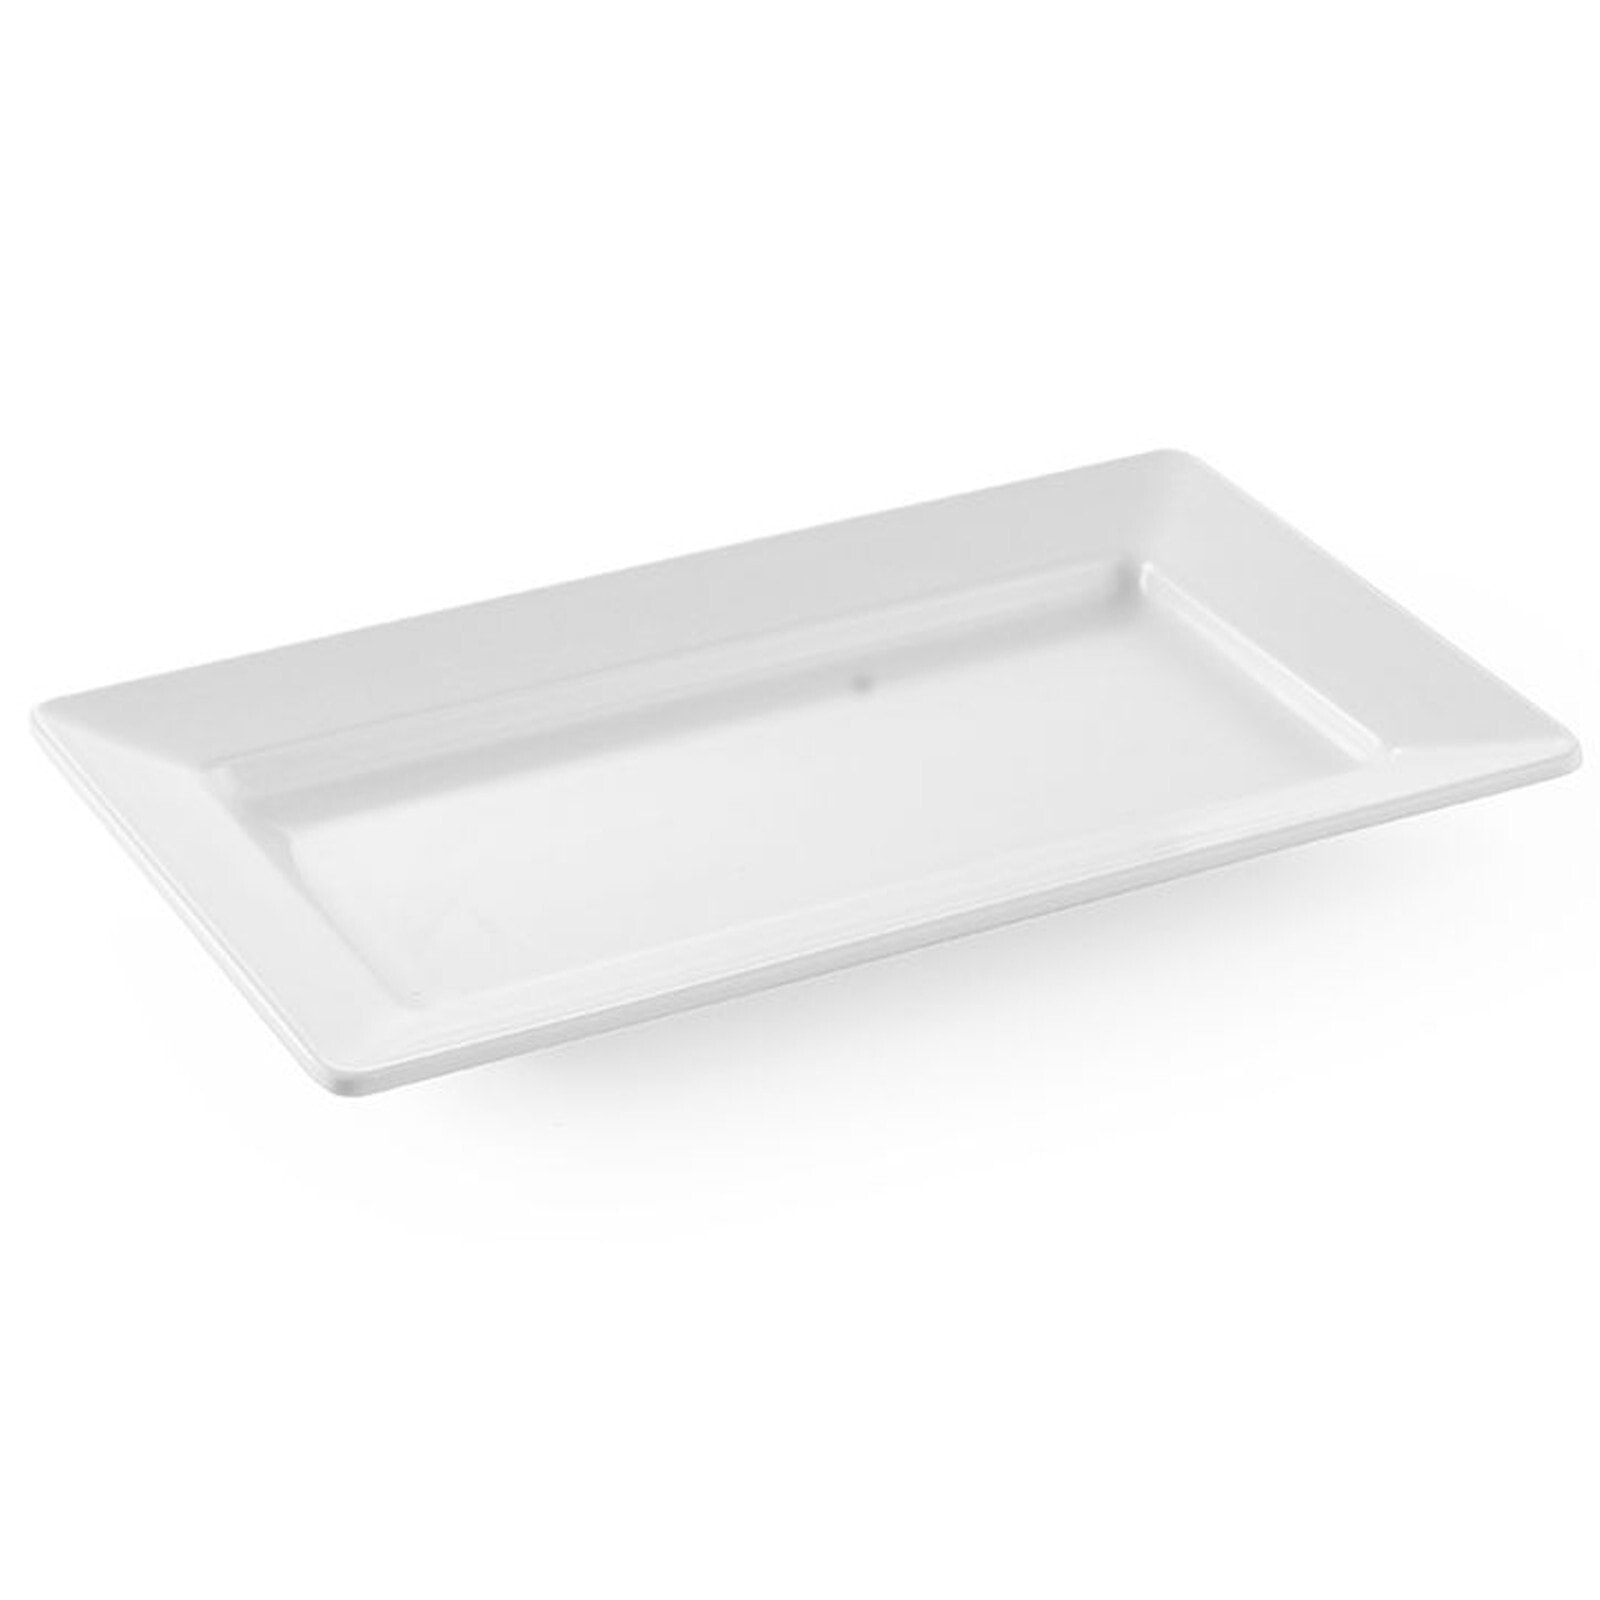 Melamine platter rectangular 36x20.5cm H 3.8cm white - Hendi 561508